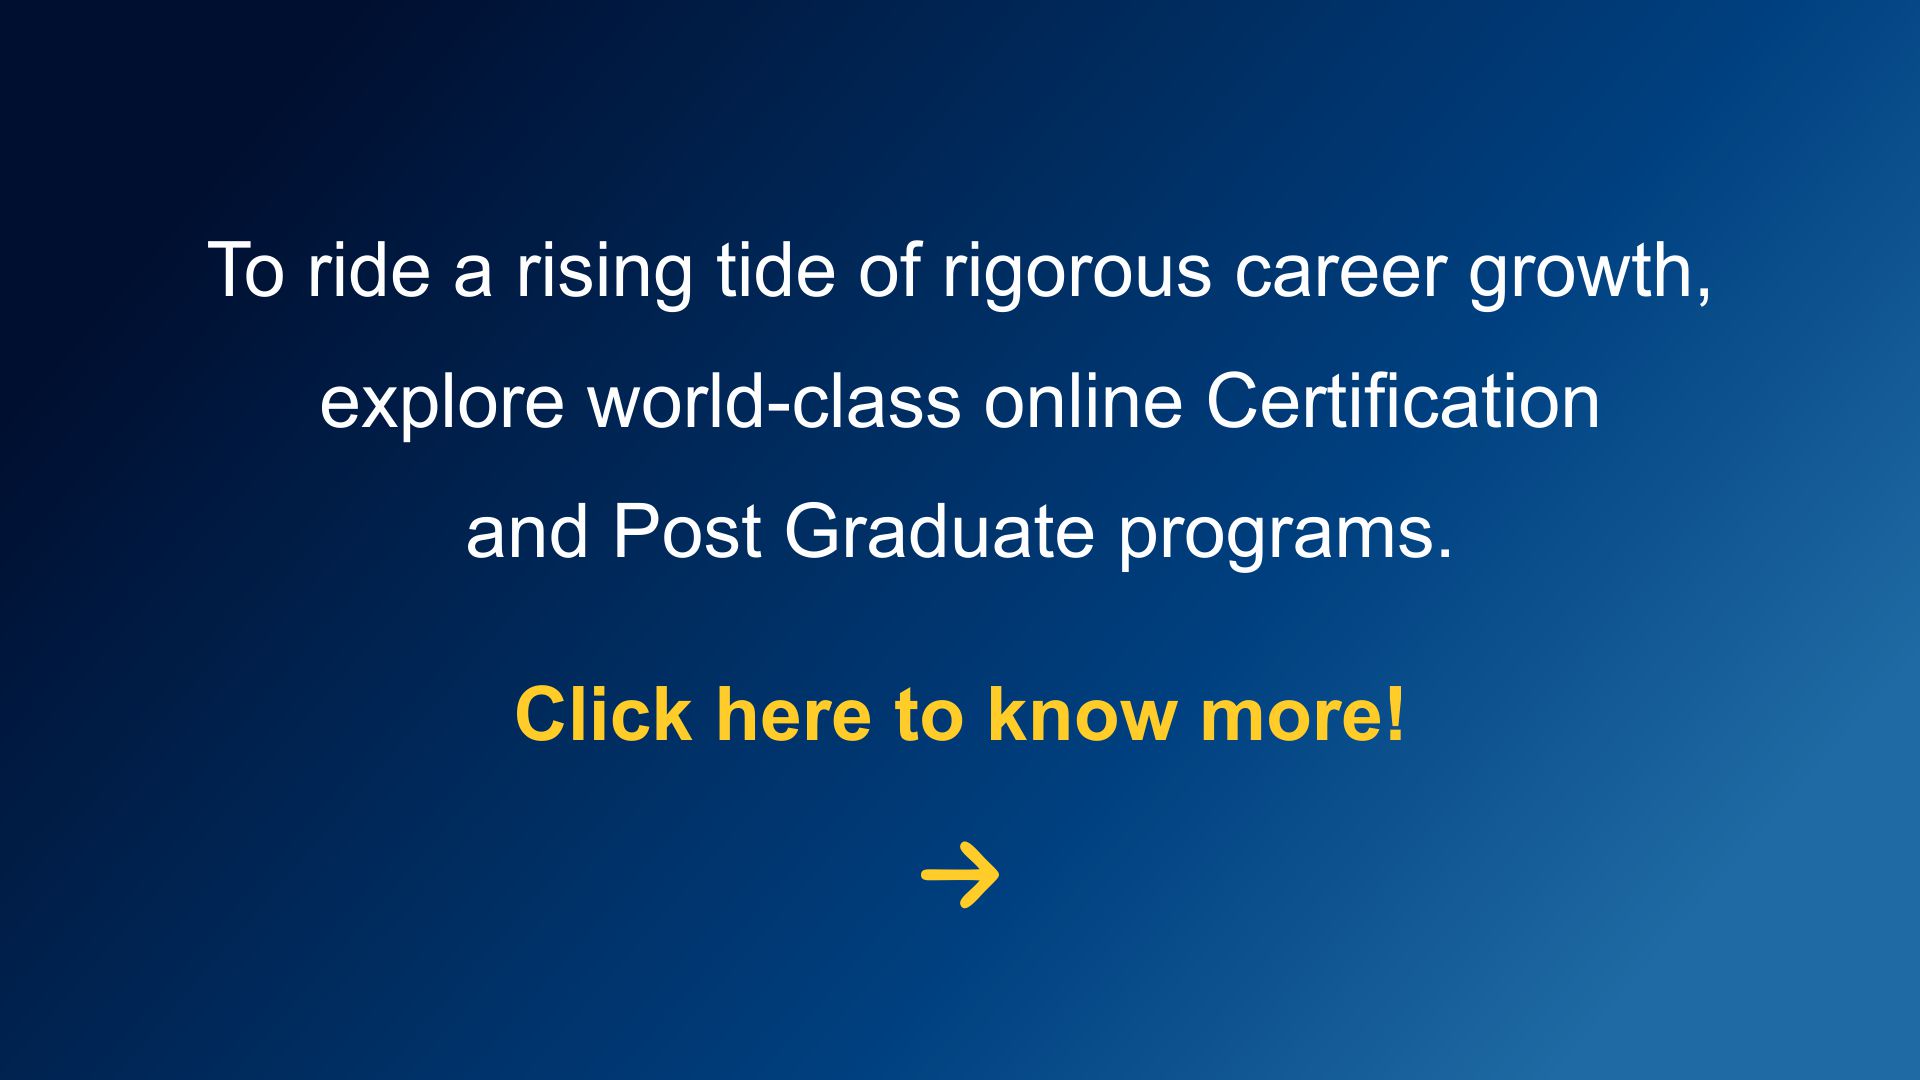 online certification courses Jaro